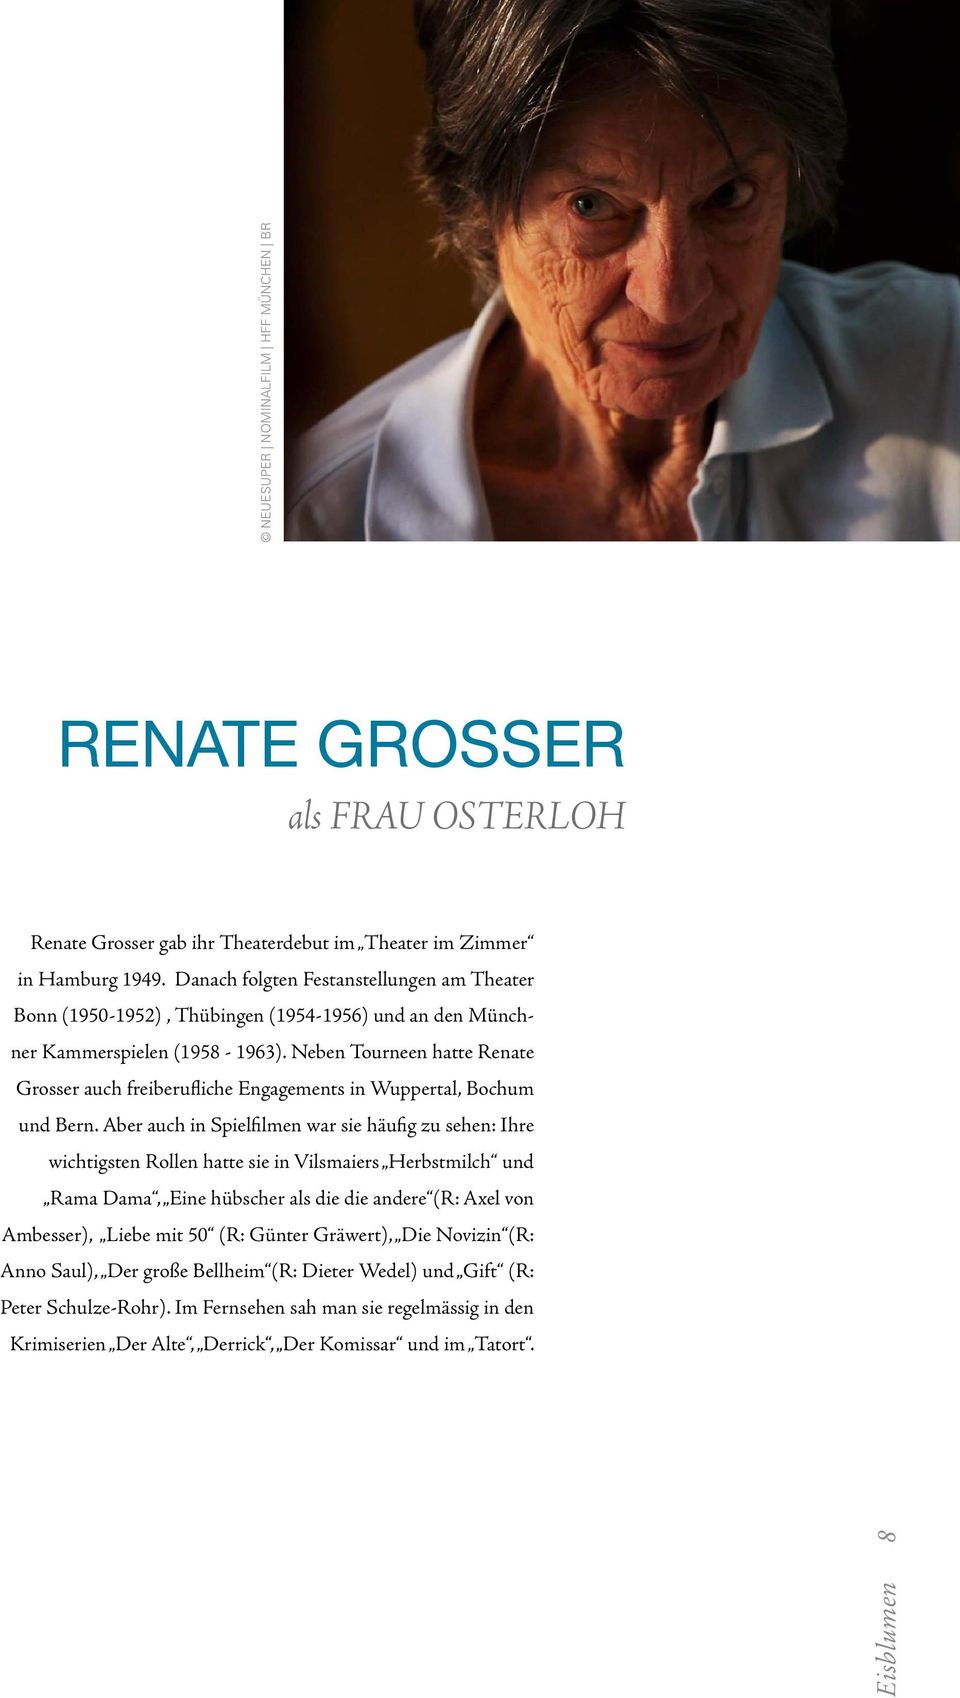 Neben Tourneen hatte Renate Grosser auch freiberufliche Engagements in Wuppertal, Bochum und Bern.